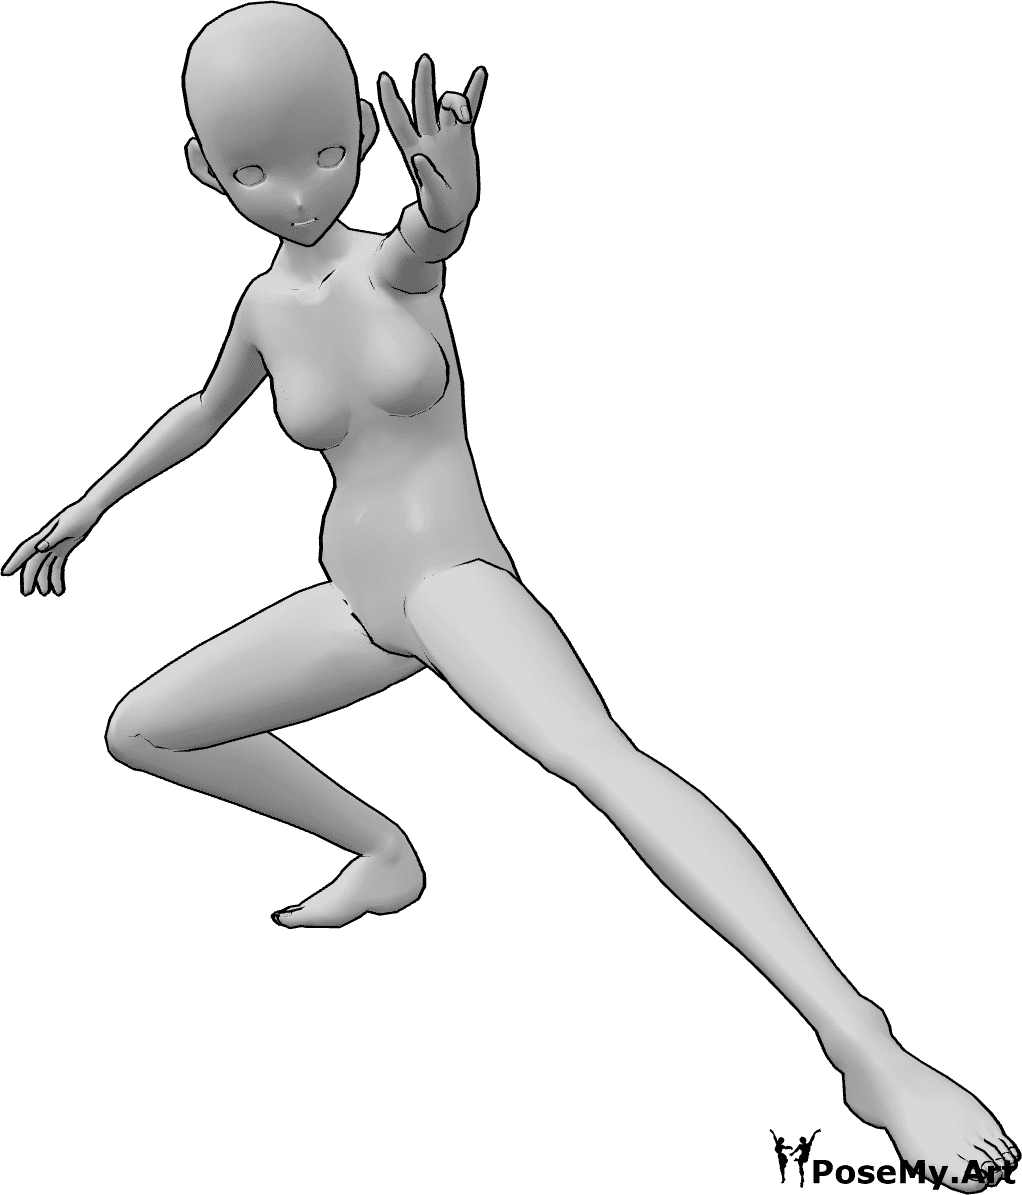 Posen-Referenz- Anime-Zauberspruch-Pose - Anime-Frau hockt und spricht einen Zauberspruch mit ihrer linken Hand